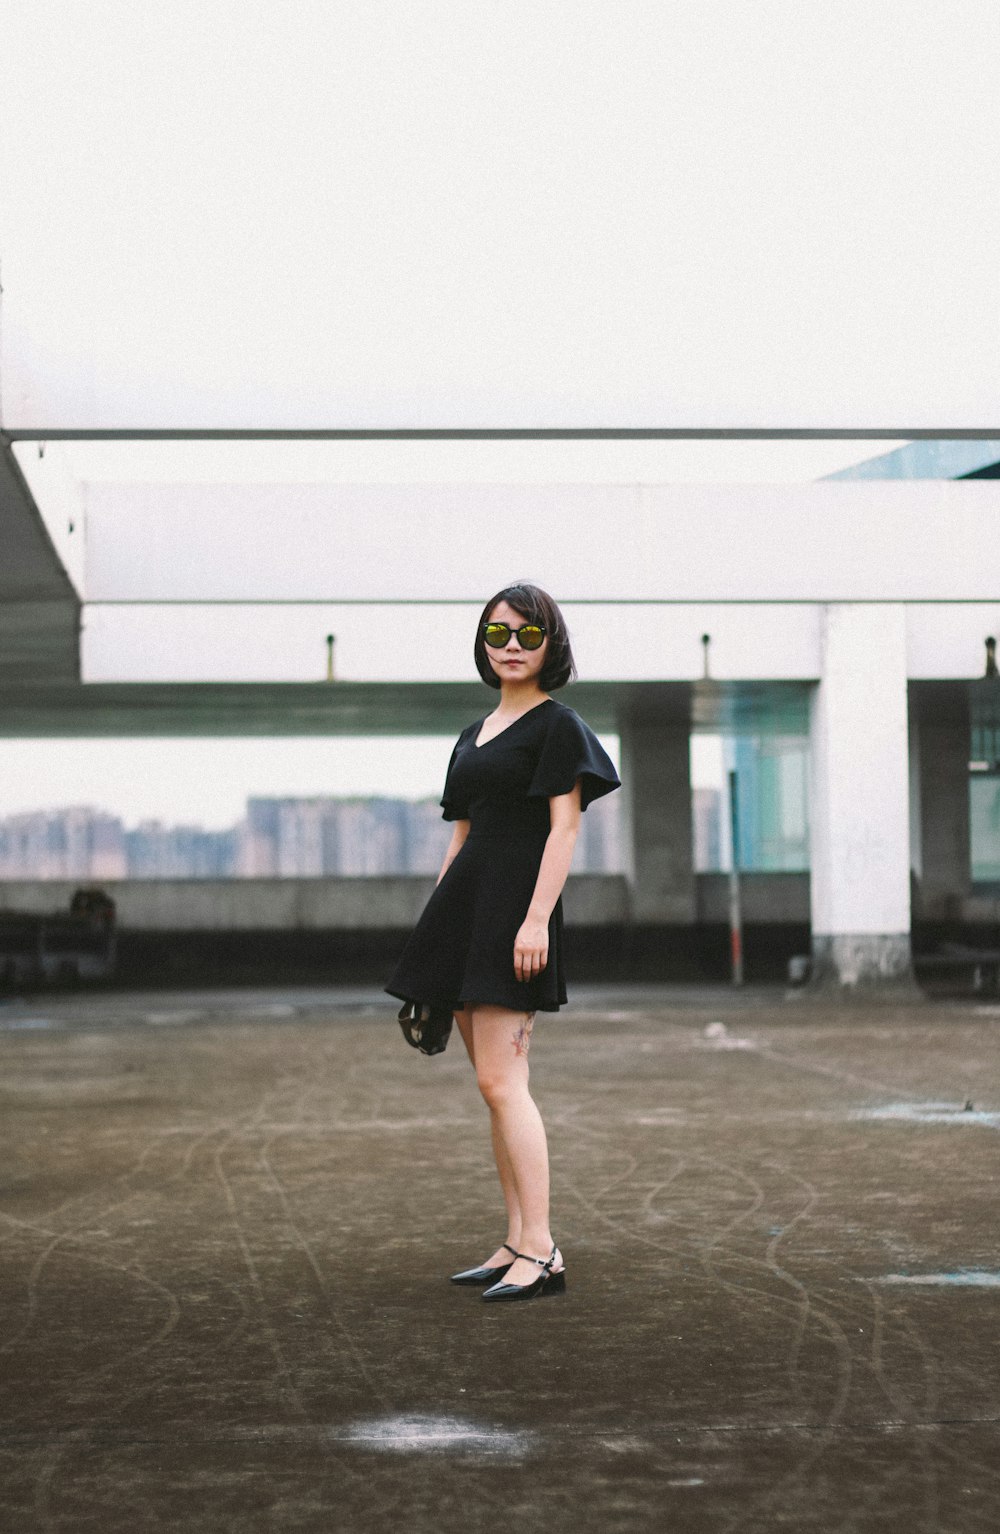 검은 미니 드레스와 검은 선글라스를 쓴 여자가 거리에 서 있습니다.